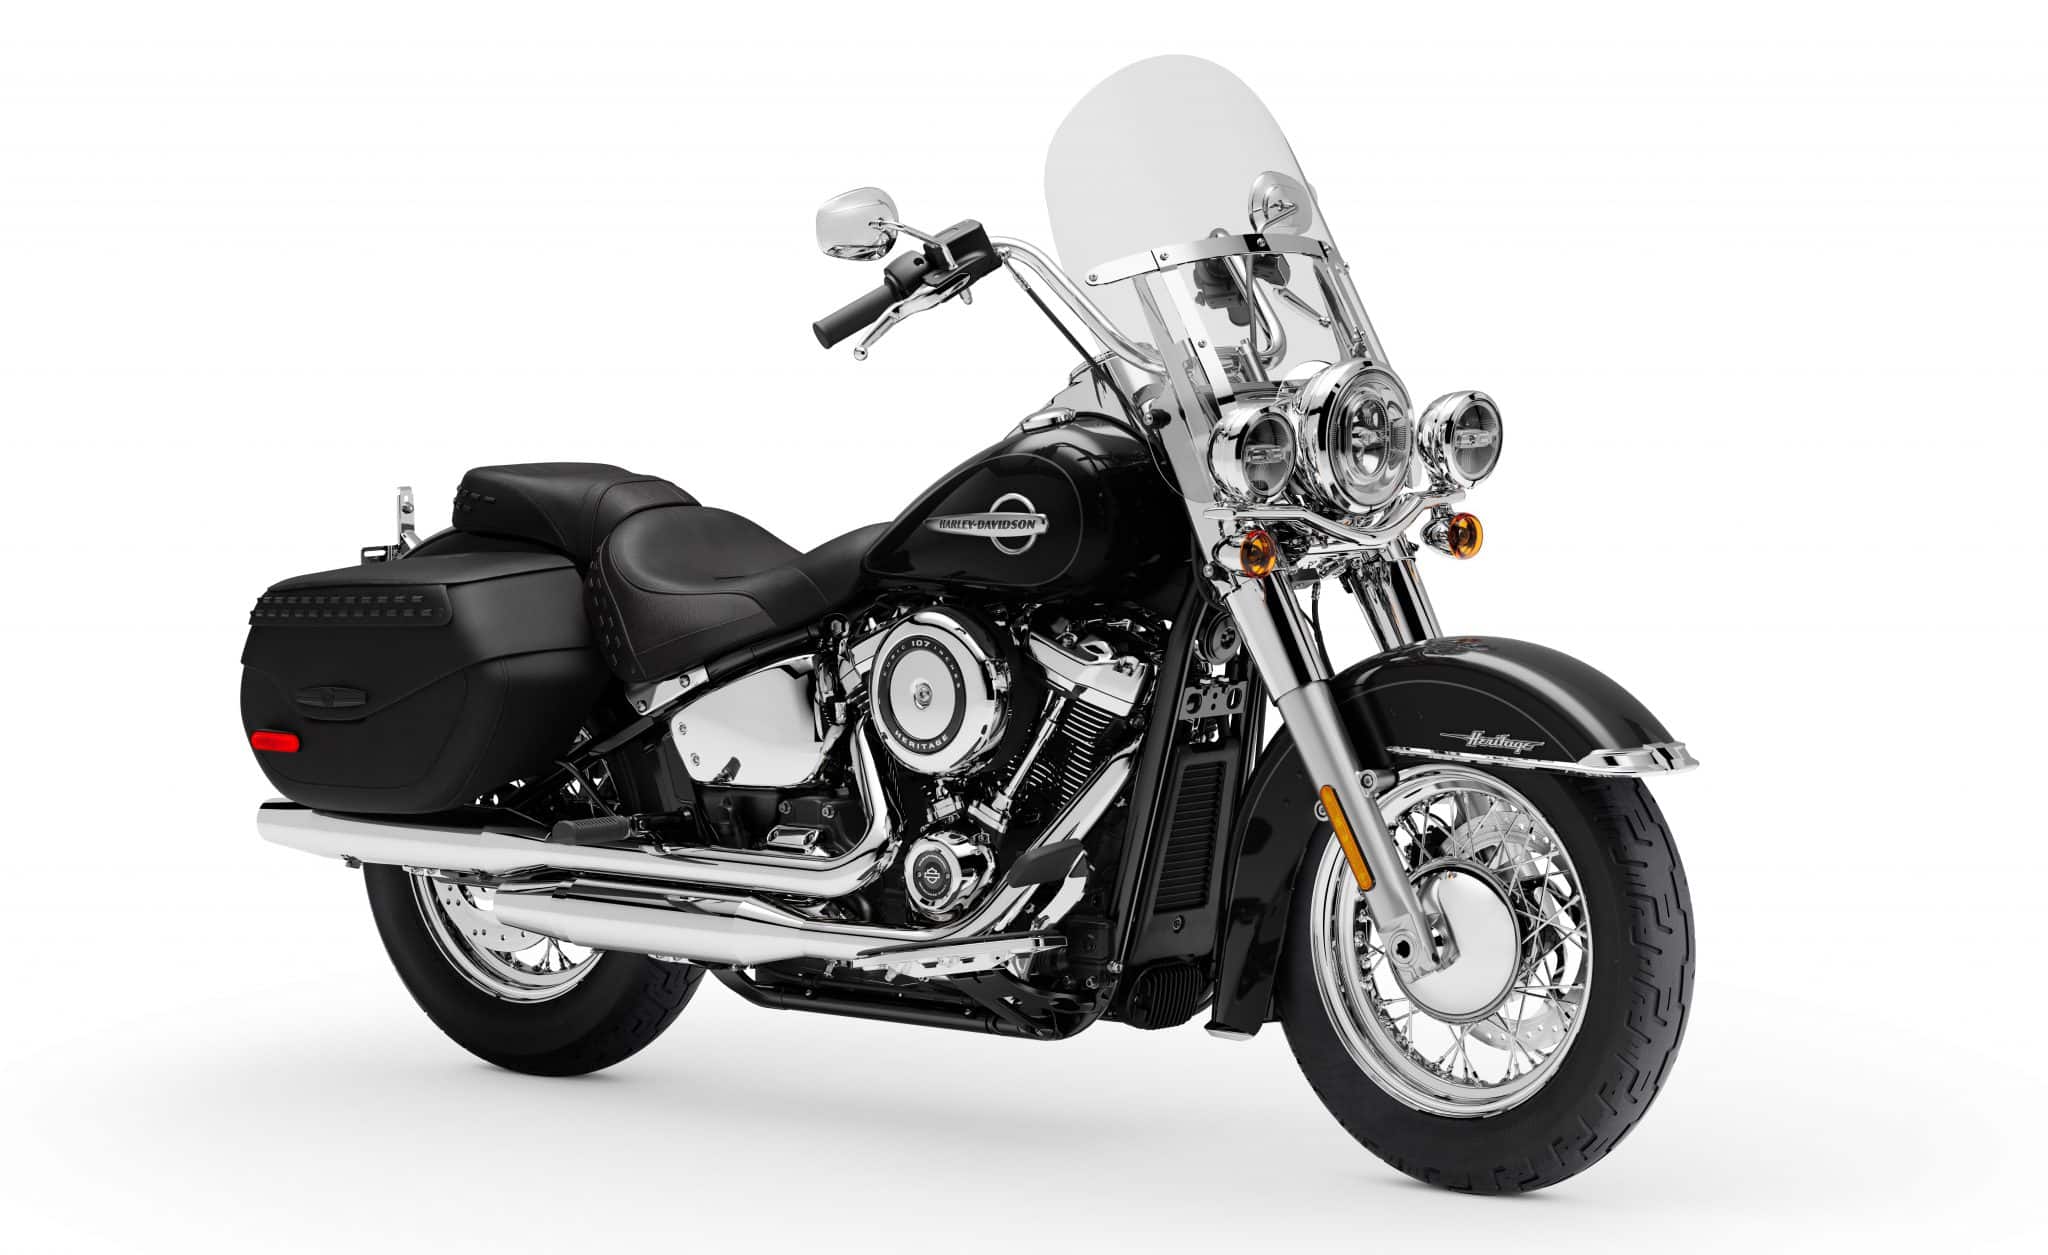 Vooruitblik 2020 Harley Davidson Heritage Classic En Modellijn Motor Nl